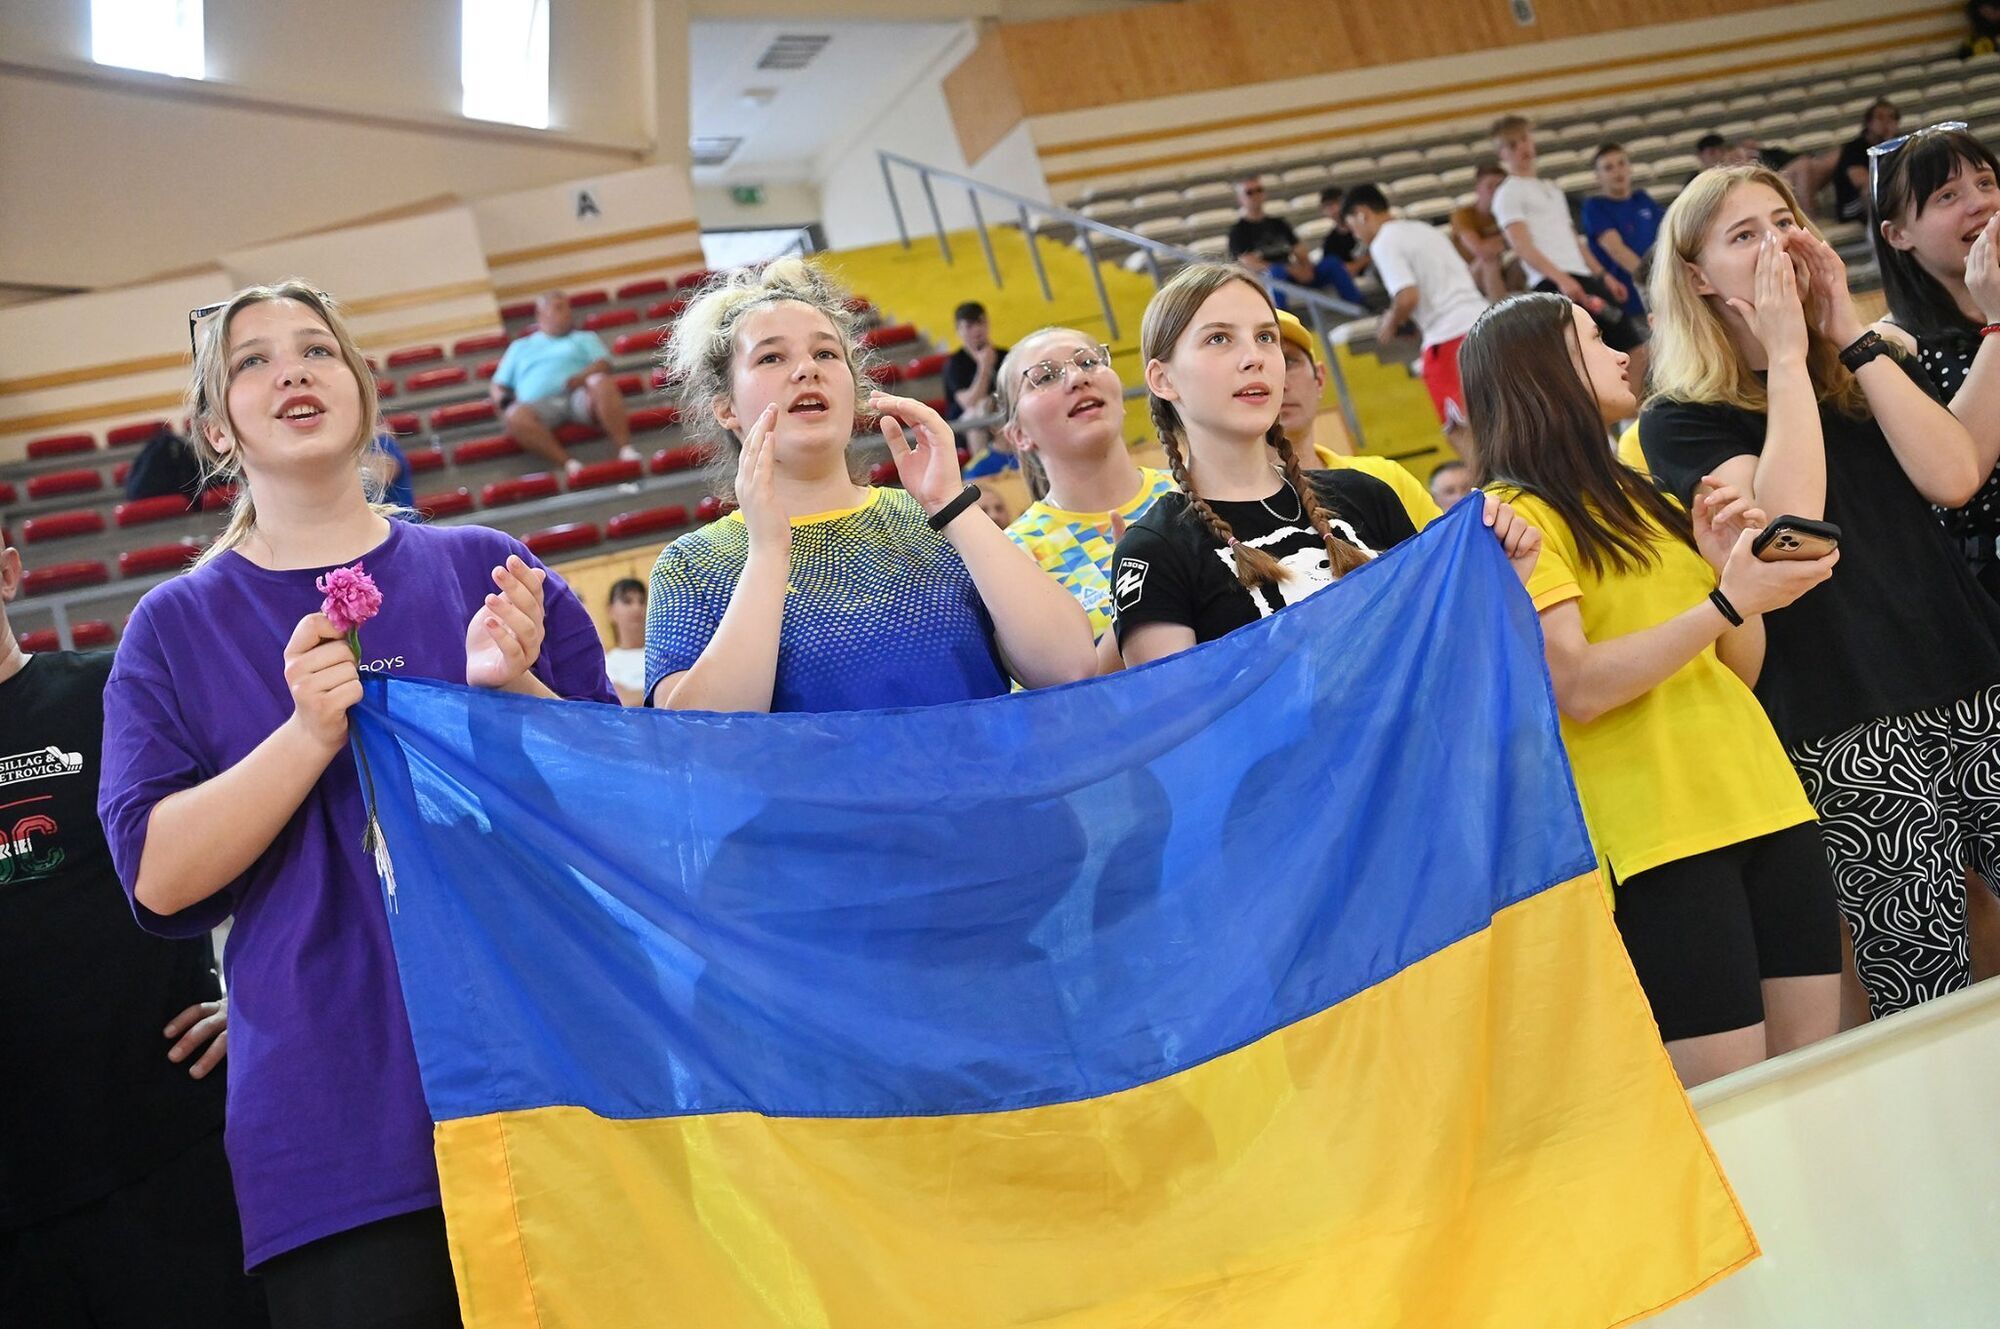 Украинку заставили убрать флаг "Азова" на награждении в Венгрии, которая заняла пророссийскую позицию